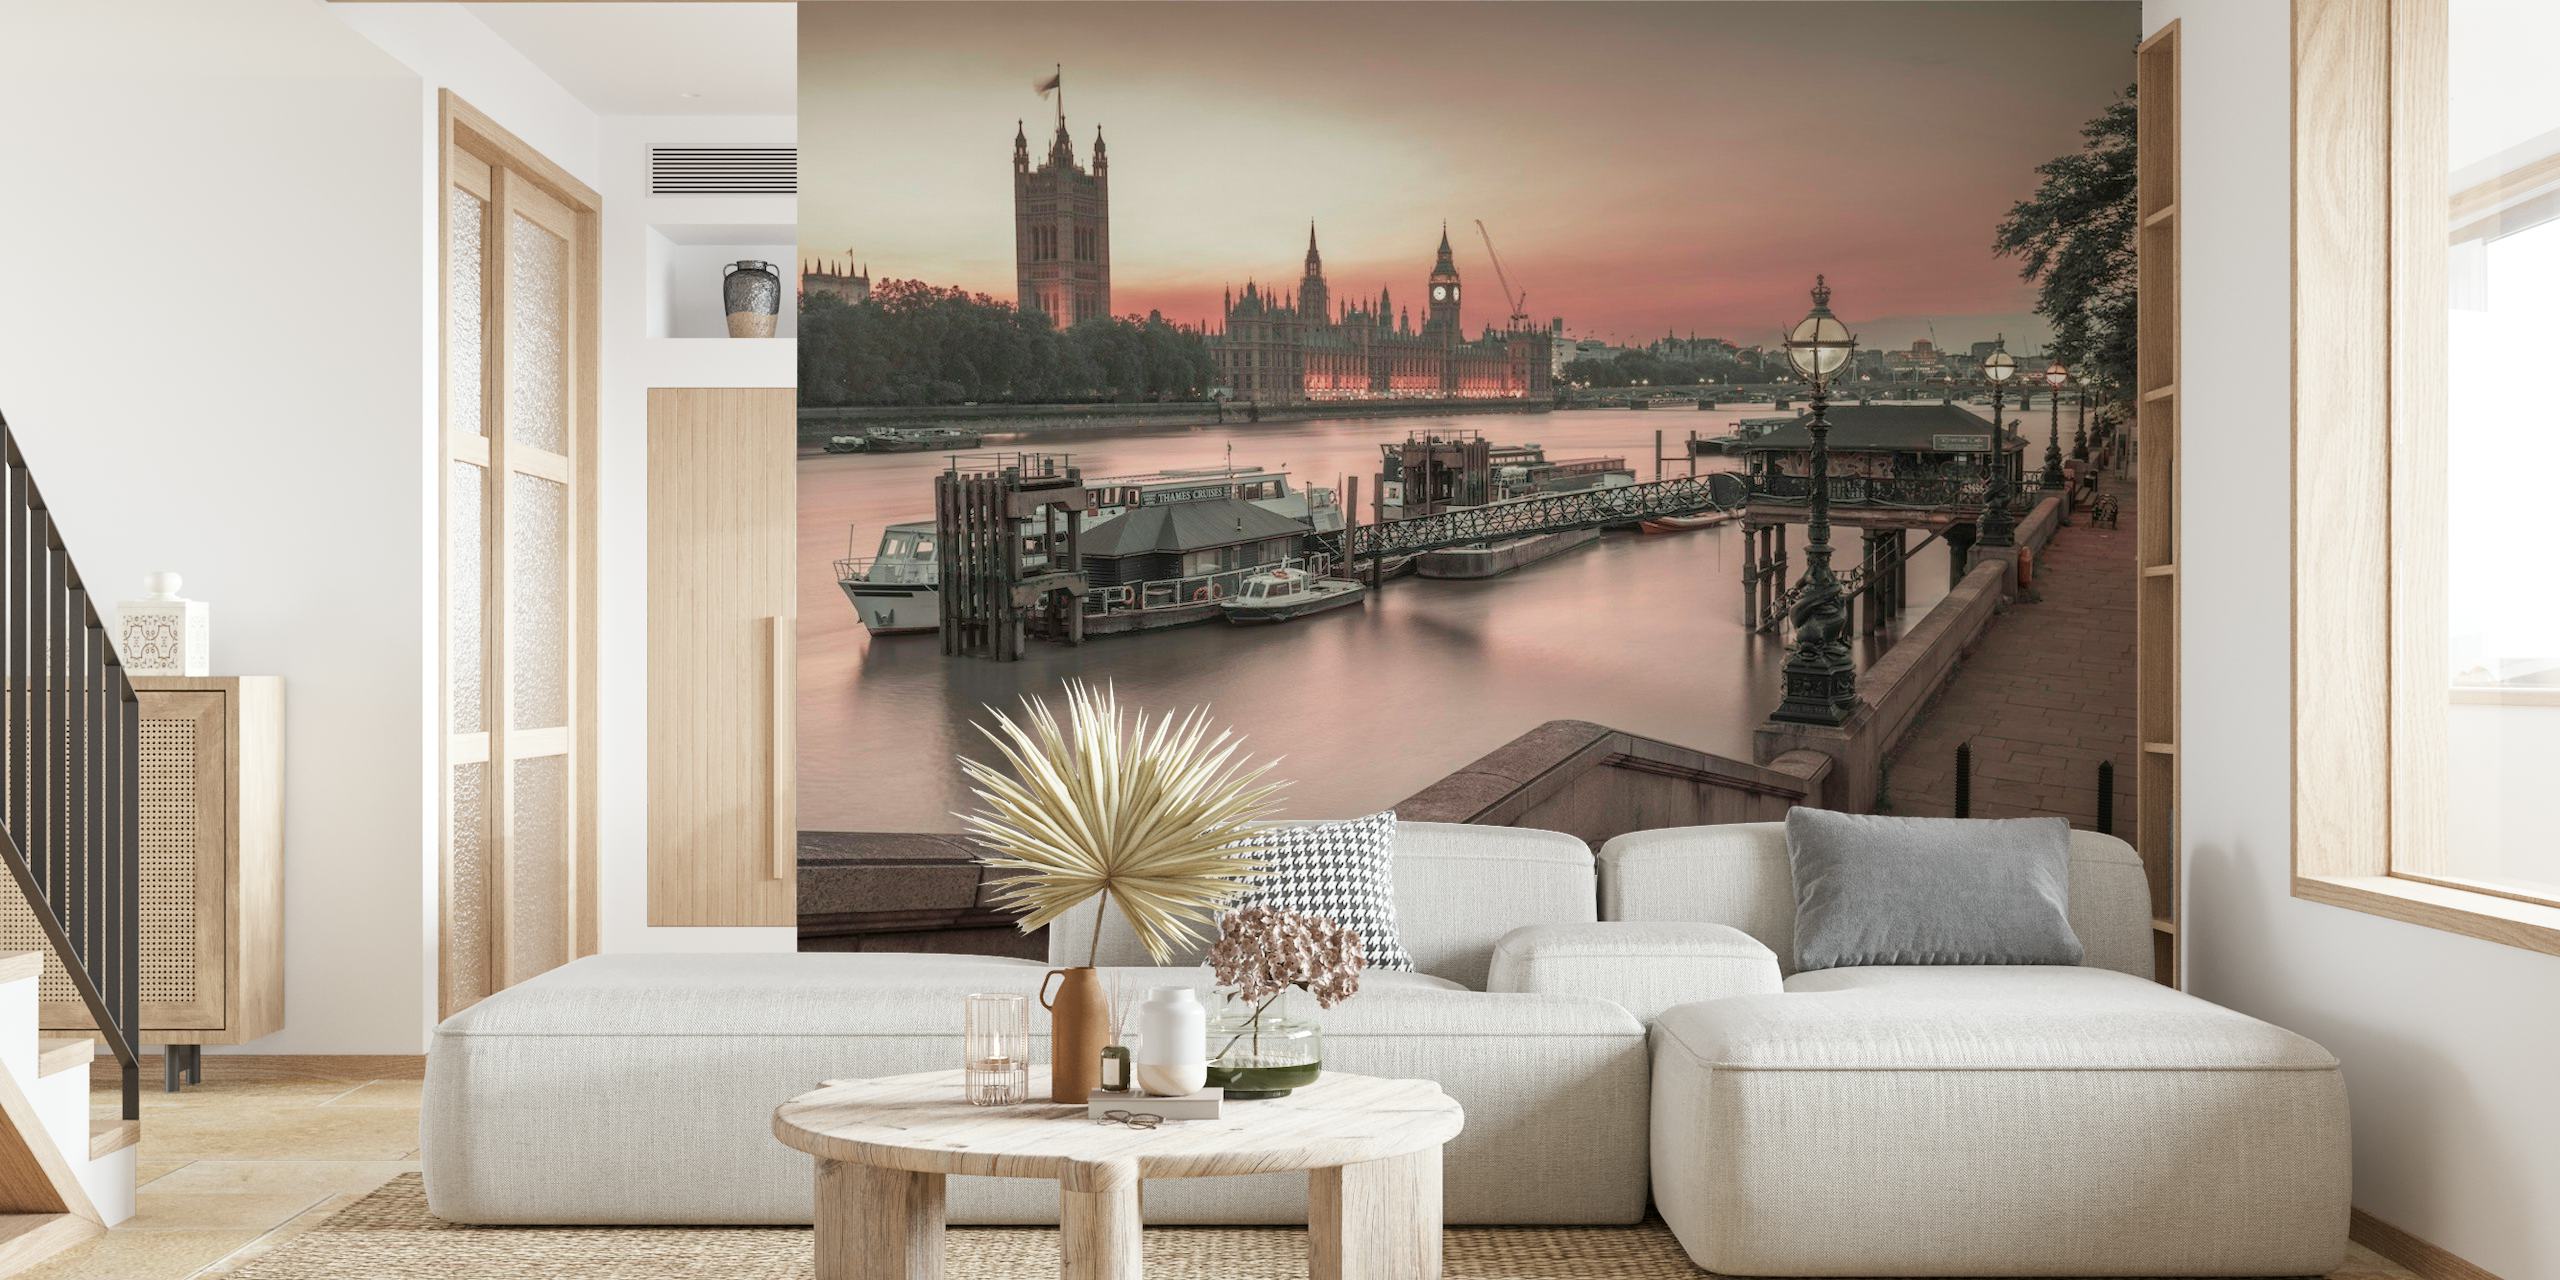 Fototapeta przedstawiająca panoramę Londynu z budynkami parlamentu i Big Benem o zmierzchu